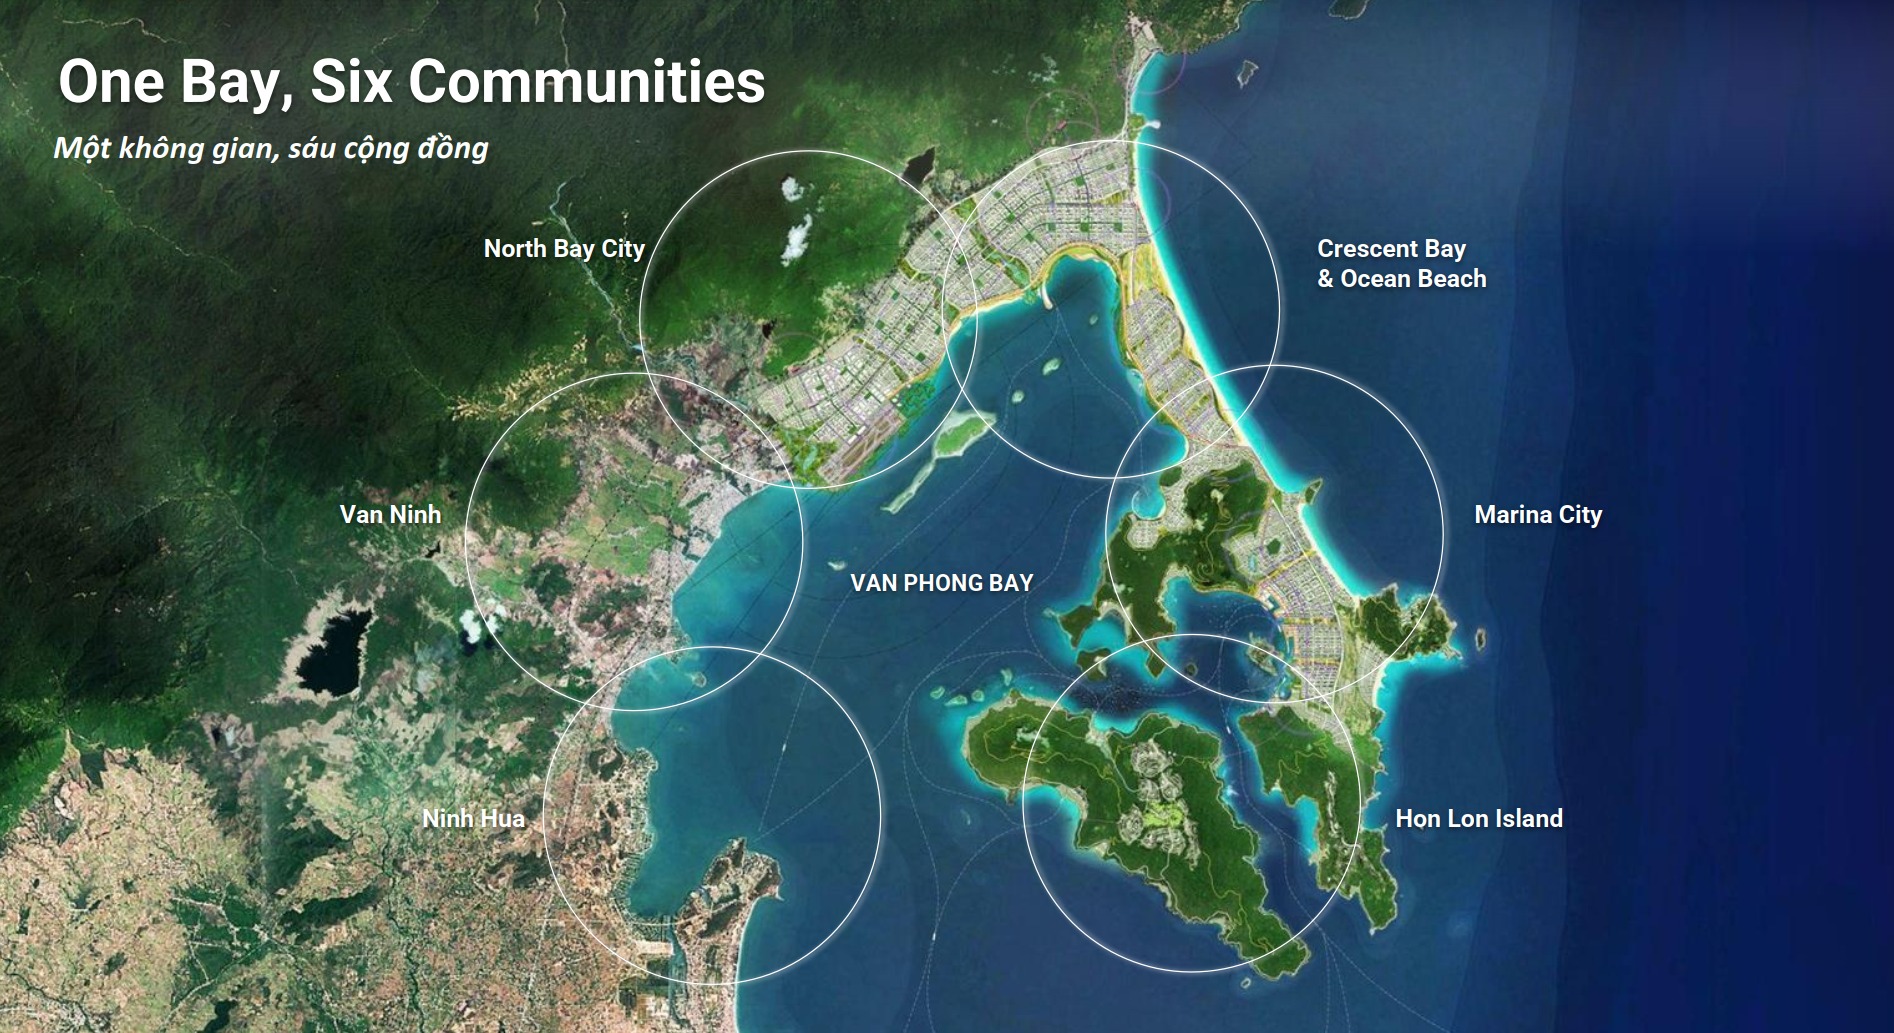 Đất nền Đặc khu kinh tế Bắc Vân Phong – Đón đầu quy hoạch 1